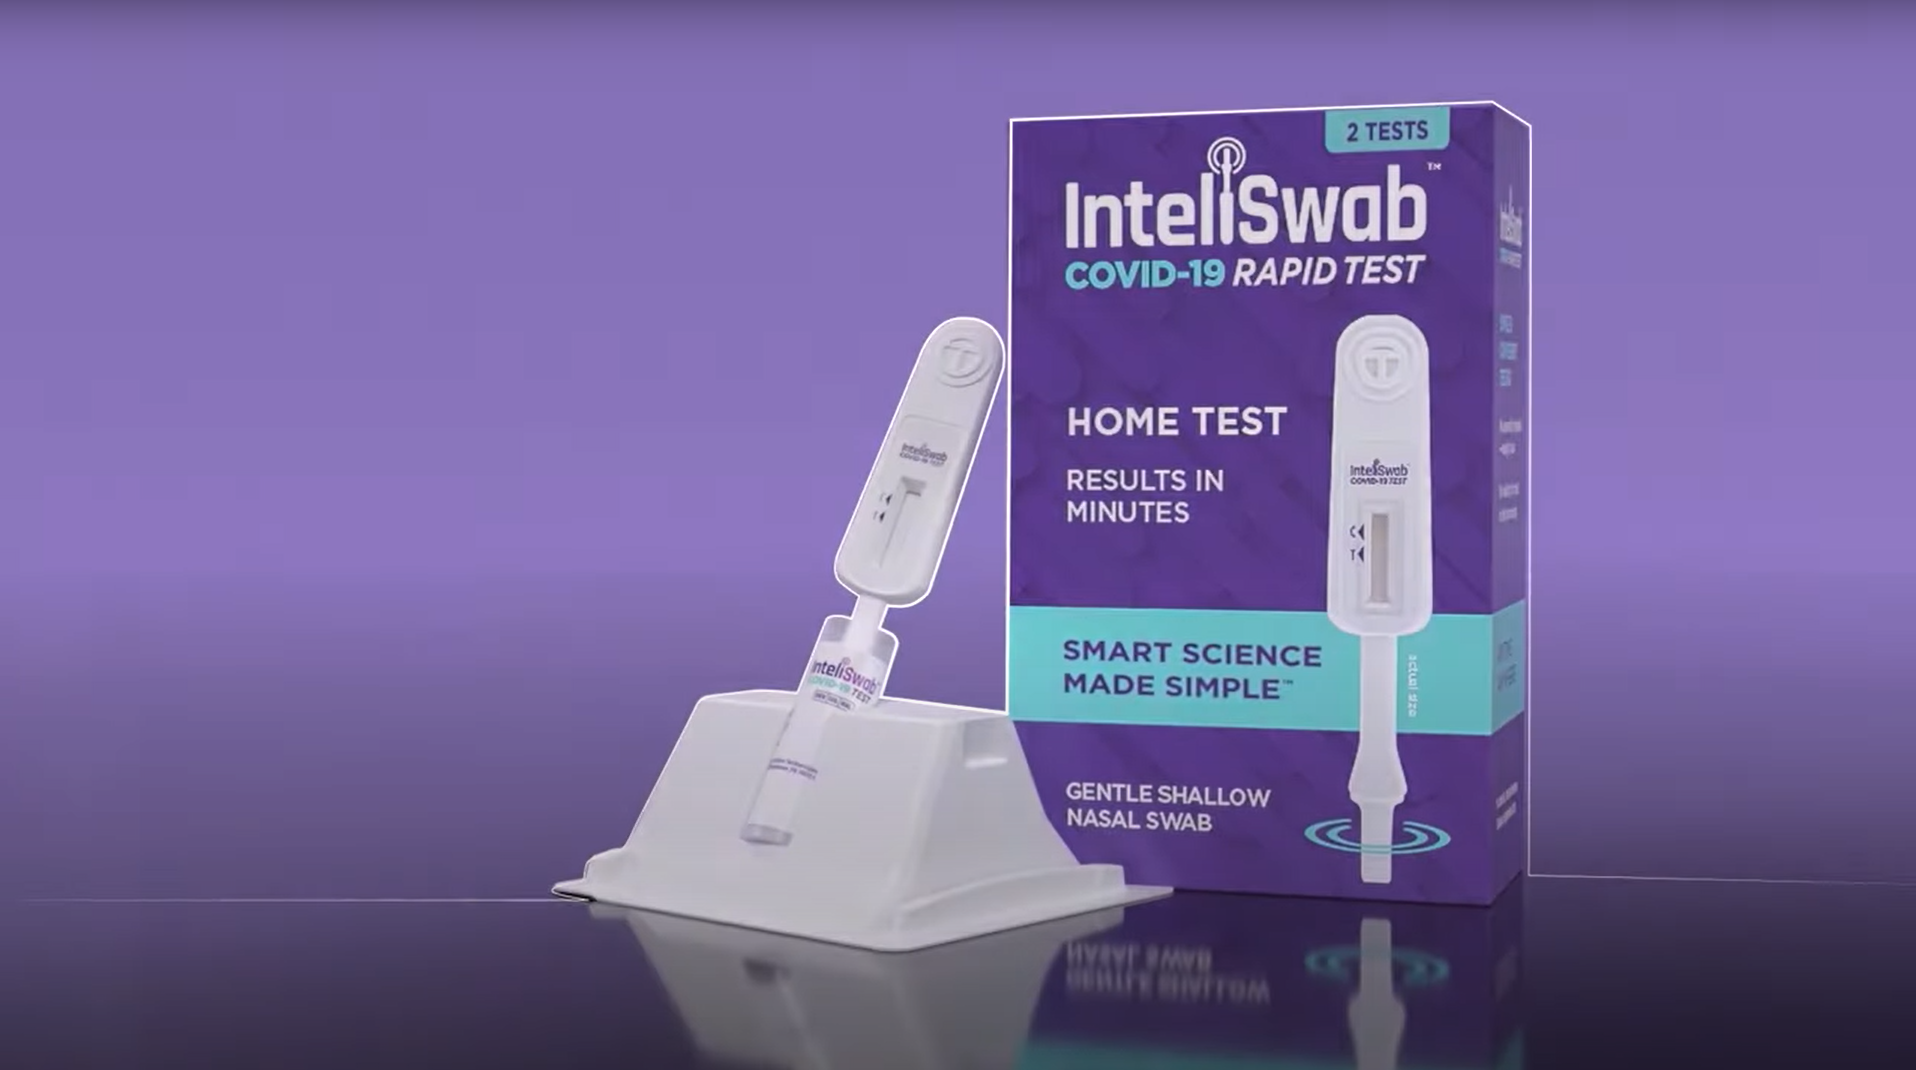 hình thu nhỏ - video hướng dẫn tự xét nghiệm của Inteliswab